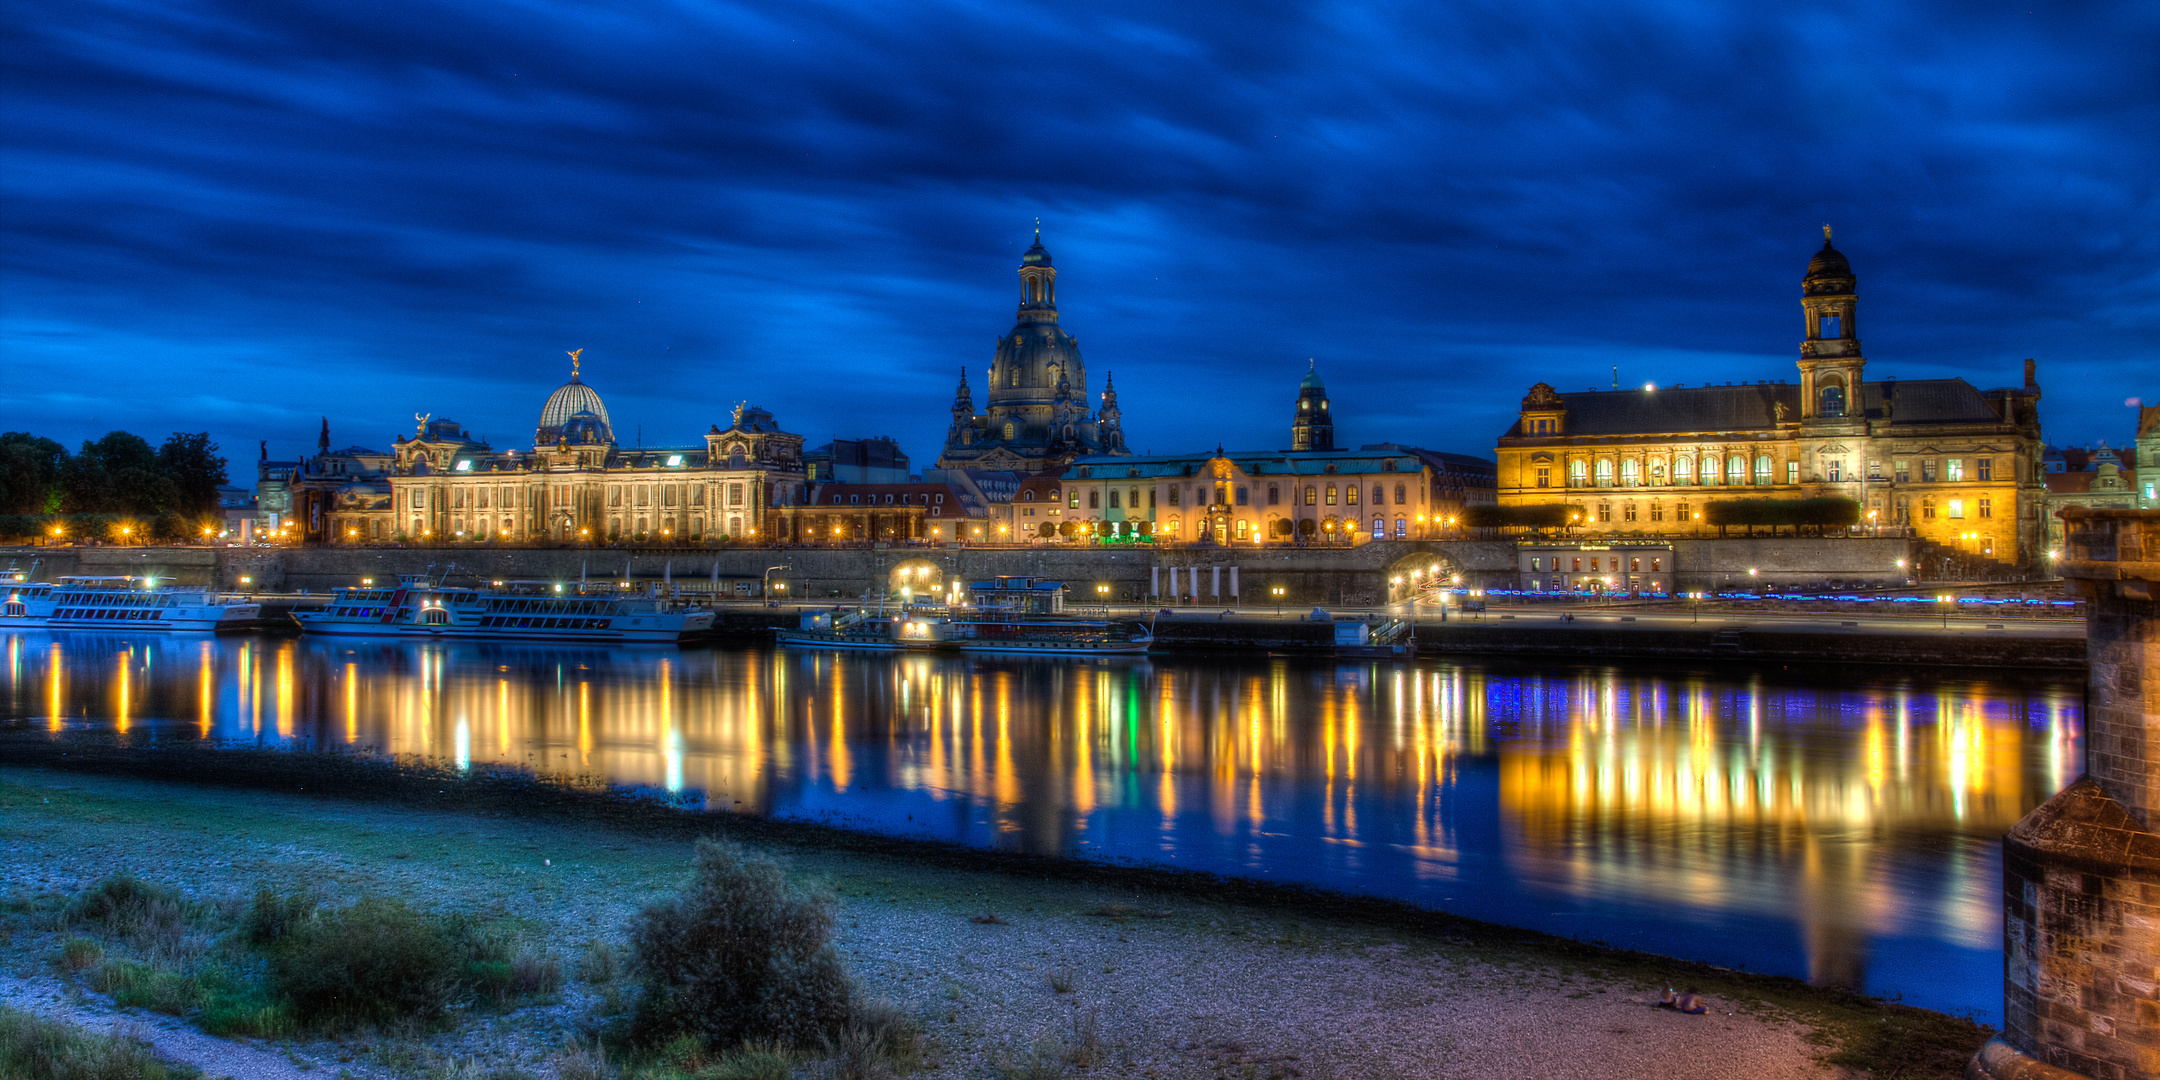 Dresdener Altstadt bei Nacht